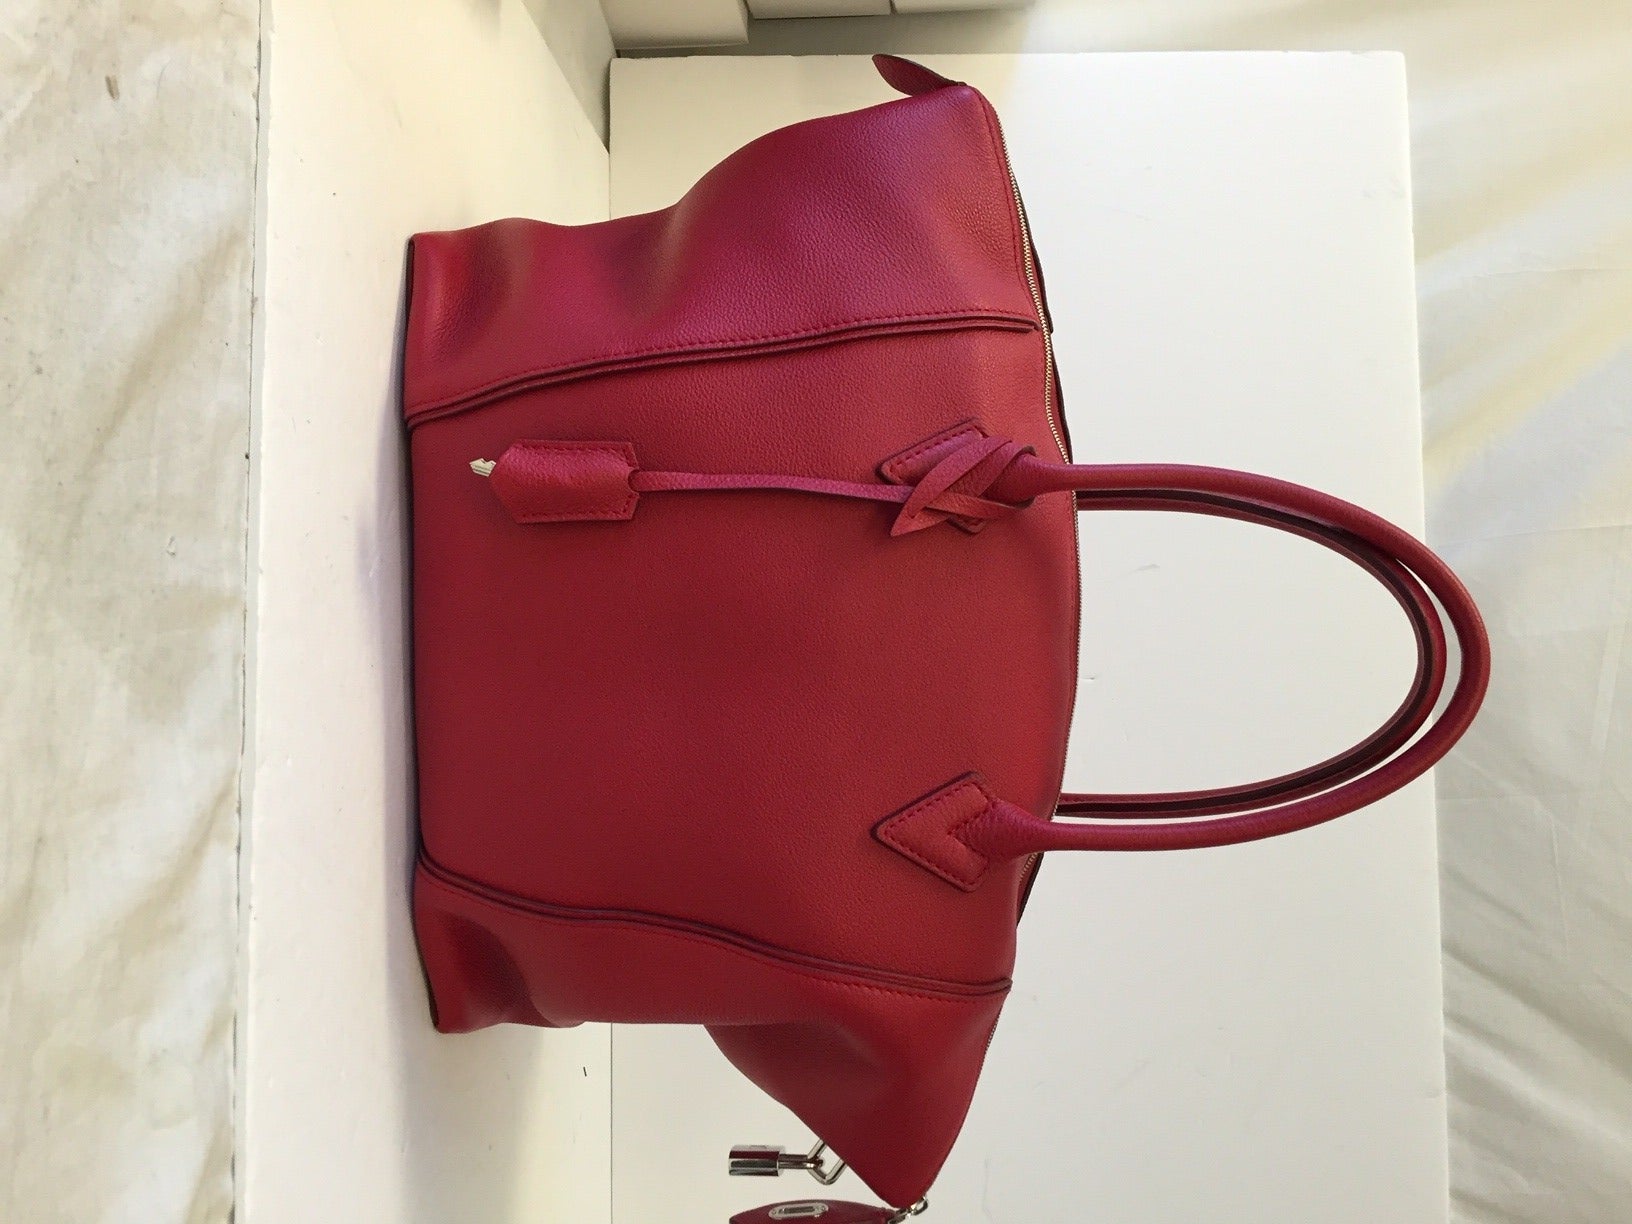 Louis Vuitton Soft Lockit MM Satchel - FINAL SALE, Louis Vuitton Handbags